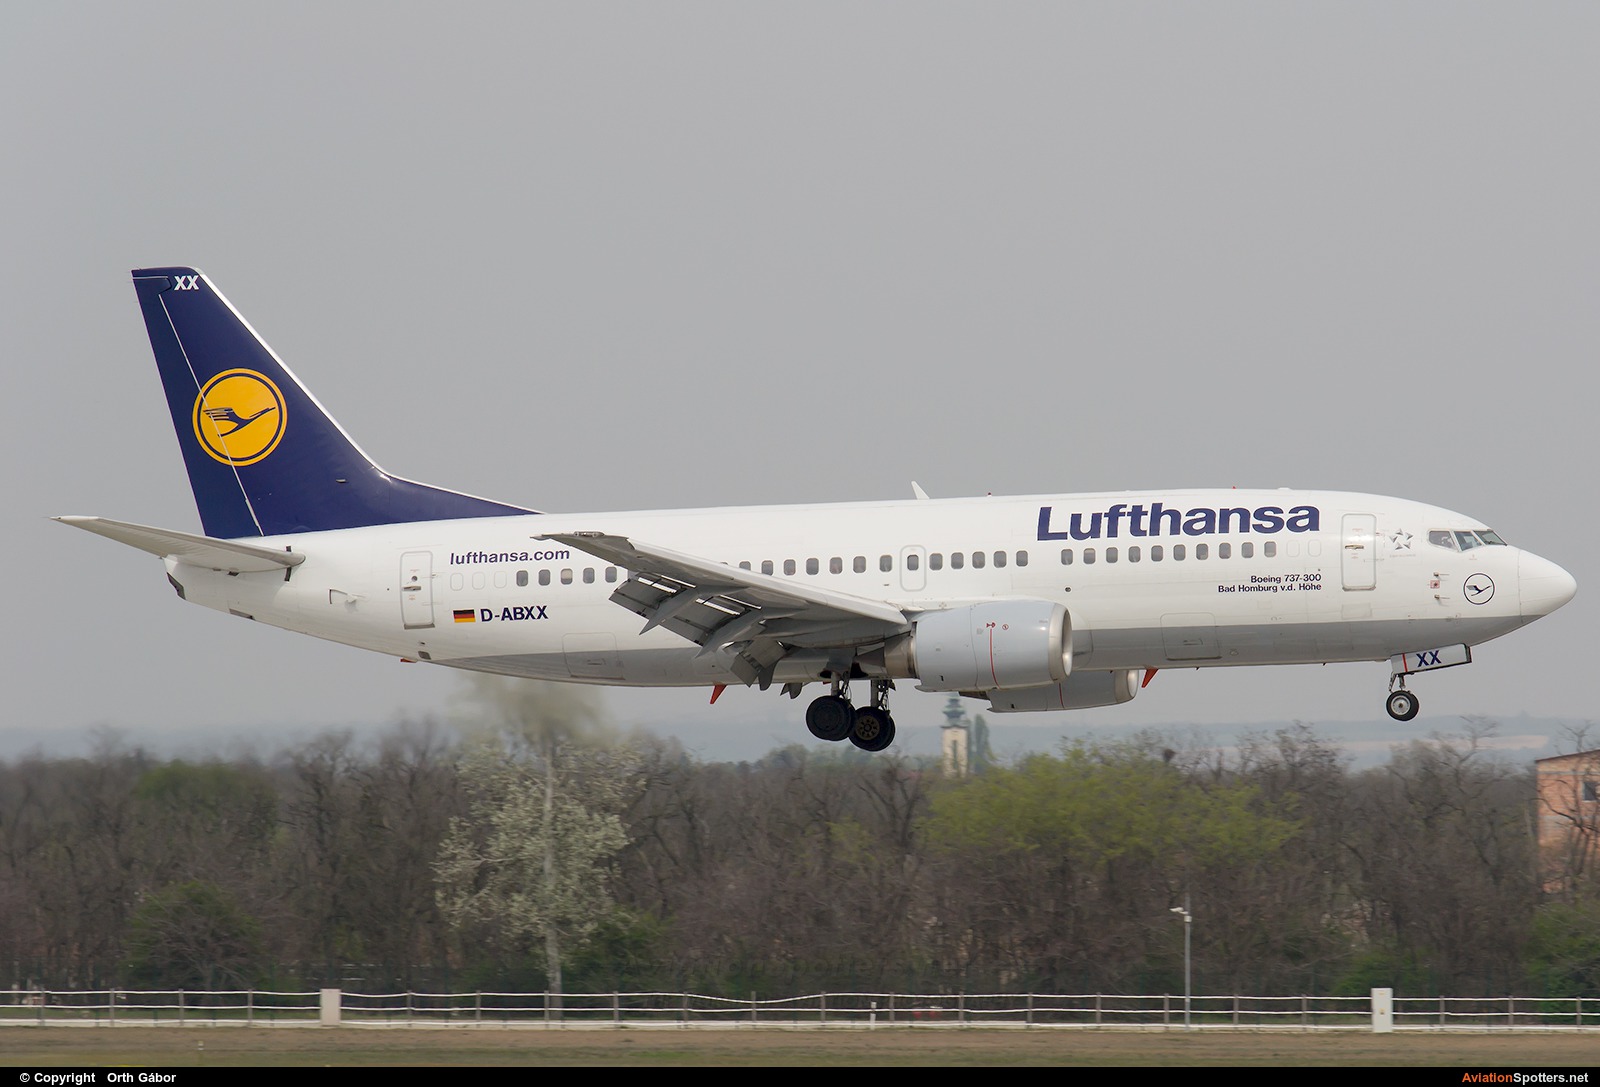 Lufthansa  -  737-300  (D-ABXX) By Orth Gábor (Roodkop)